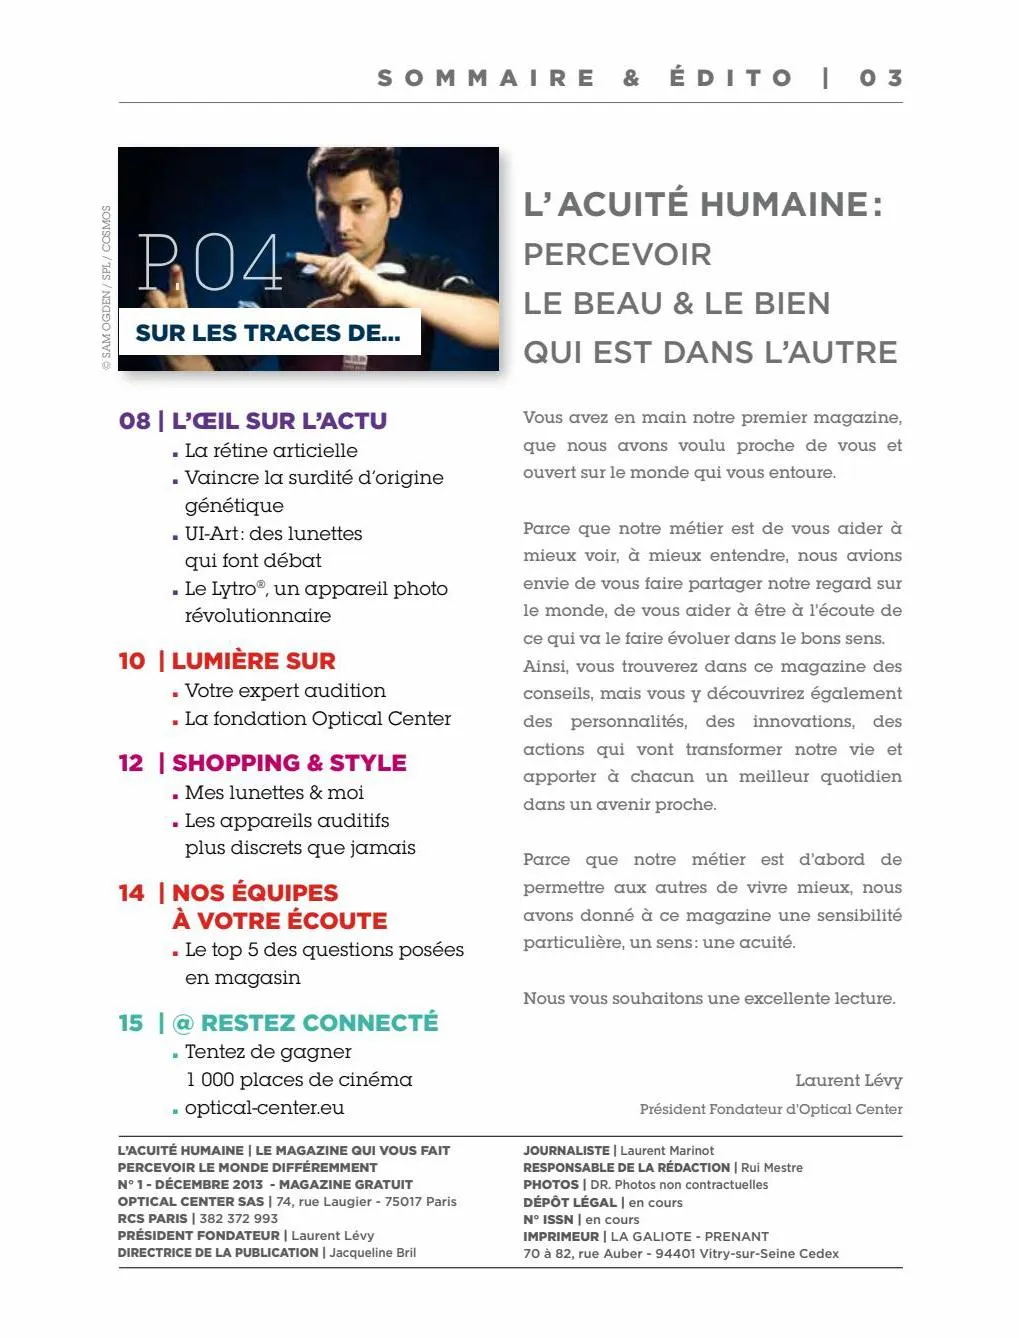 Catalogue La cuite humaine, page 00003